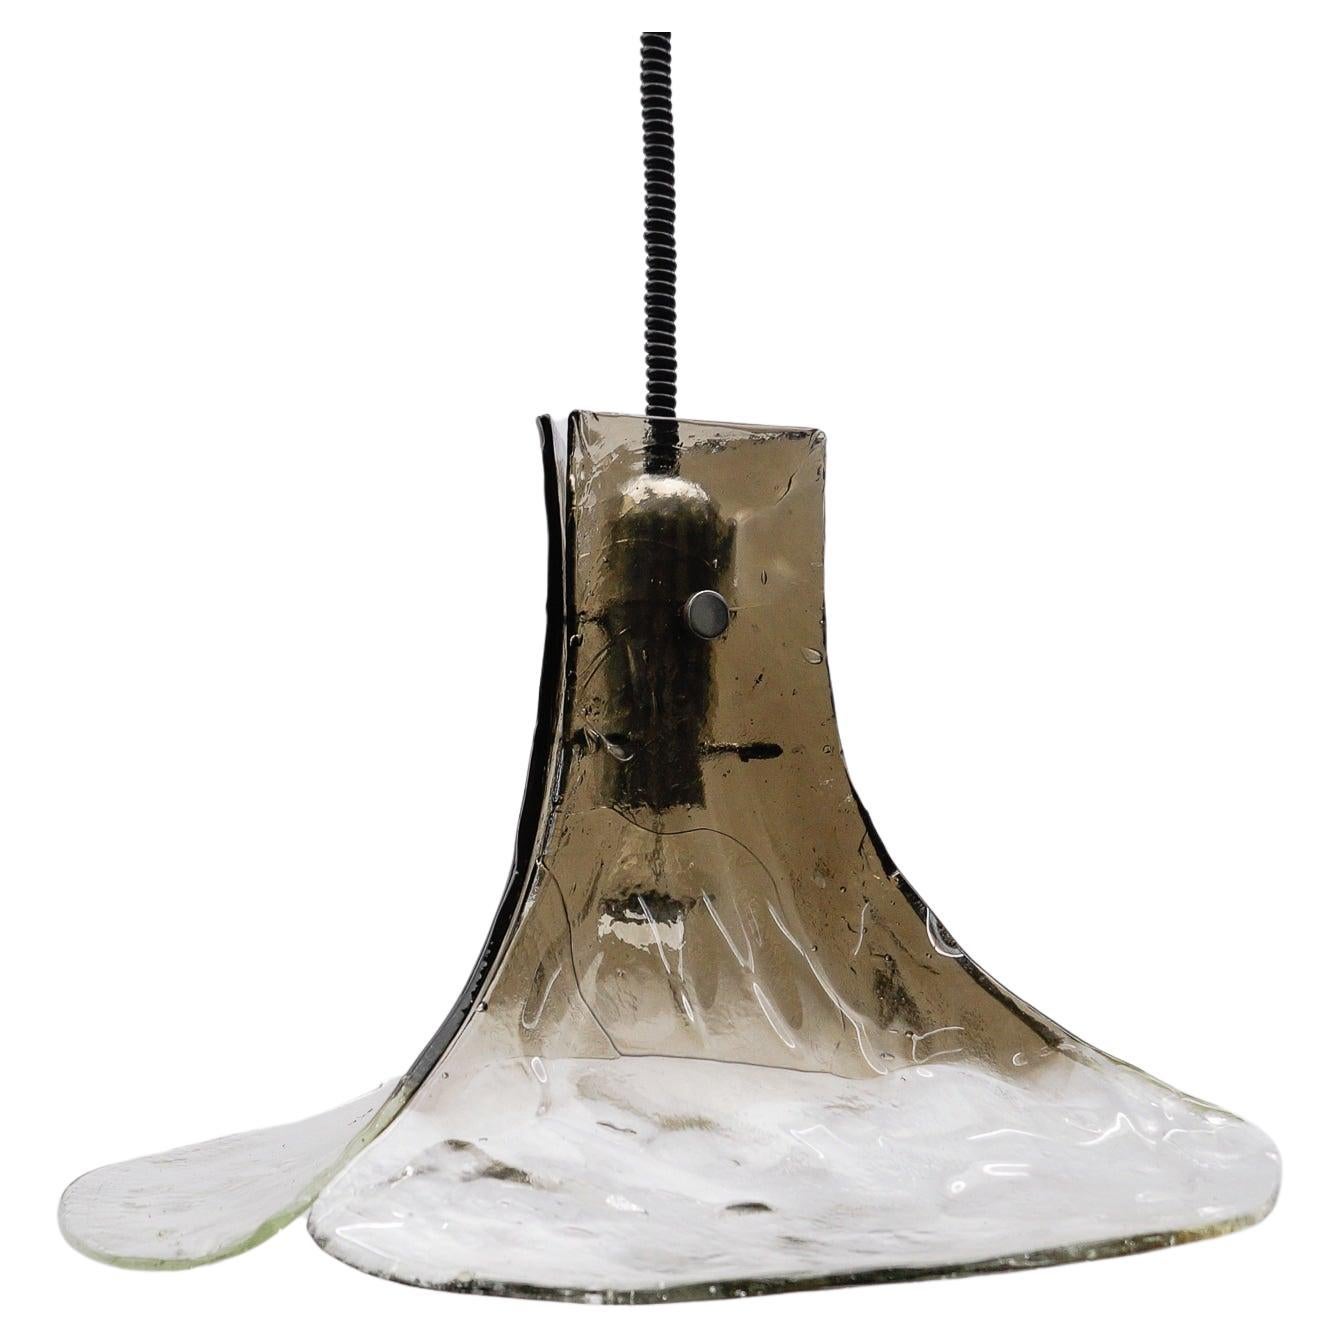 Carlo Nason Mazzega Pendant Lamp for J.T. Kalmar in Murano Glass, 1970s For Sale